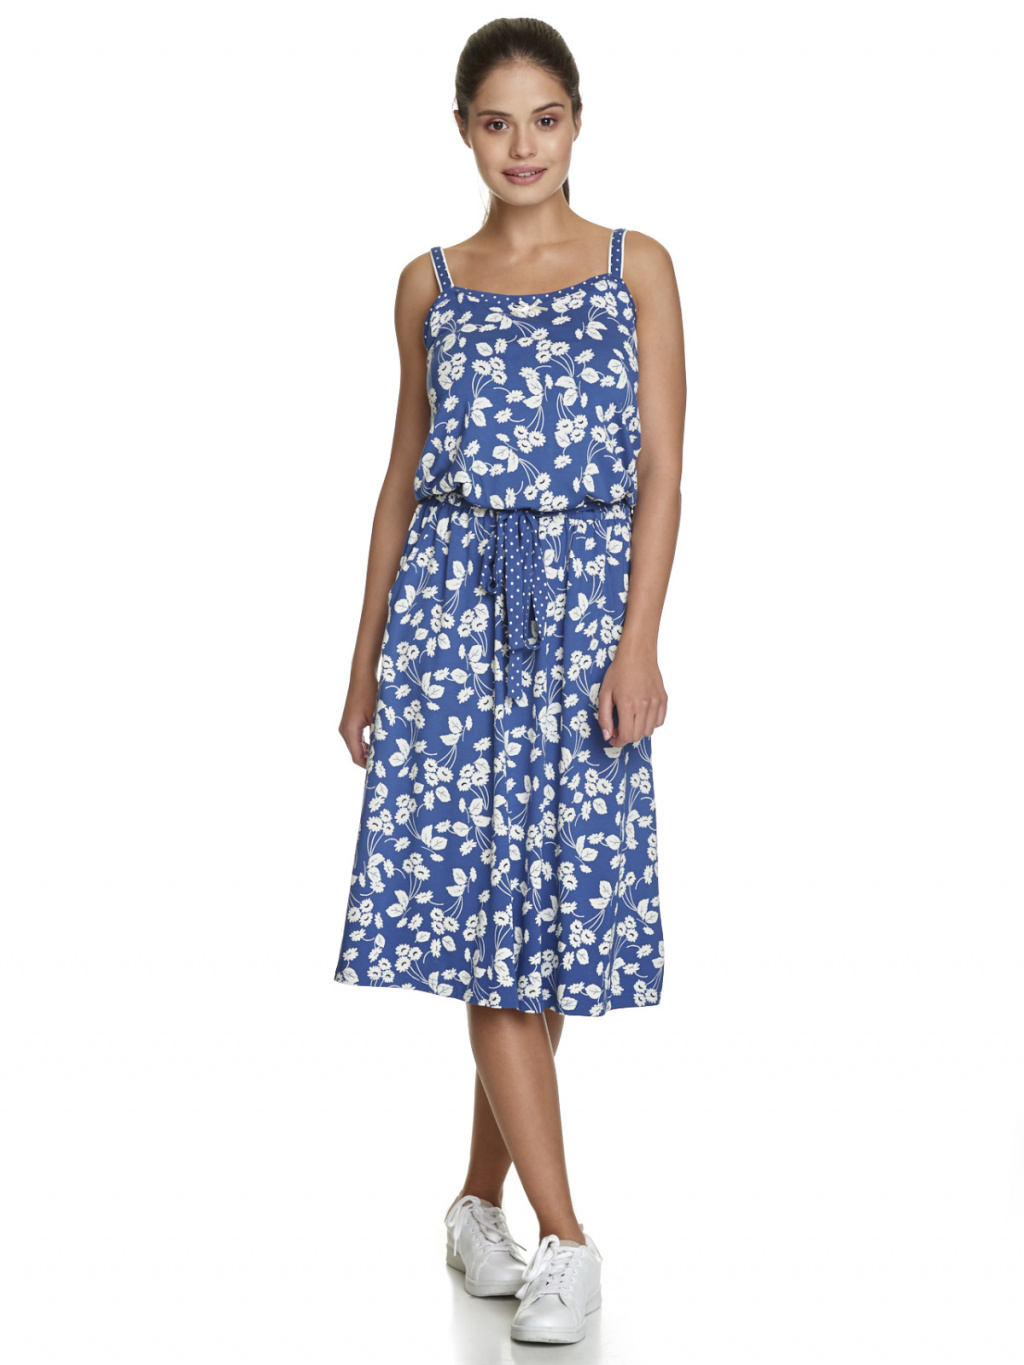 Letní šaty na ramínka modrobílé s kapsami Vive Maria - Berlin Boutique